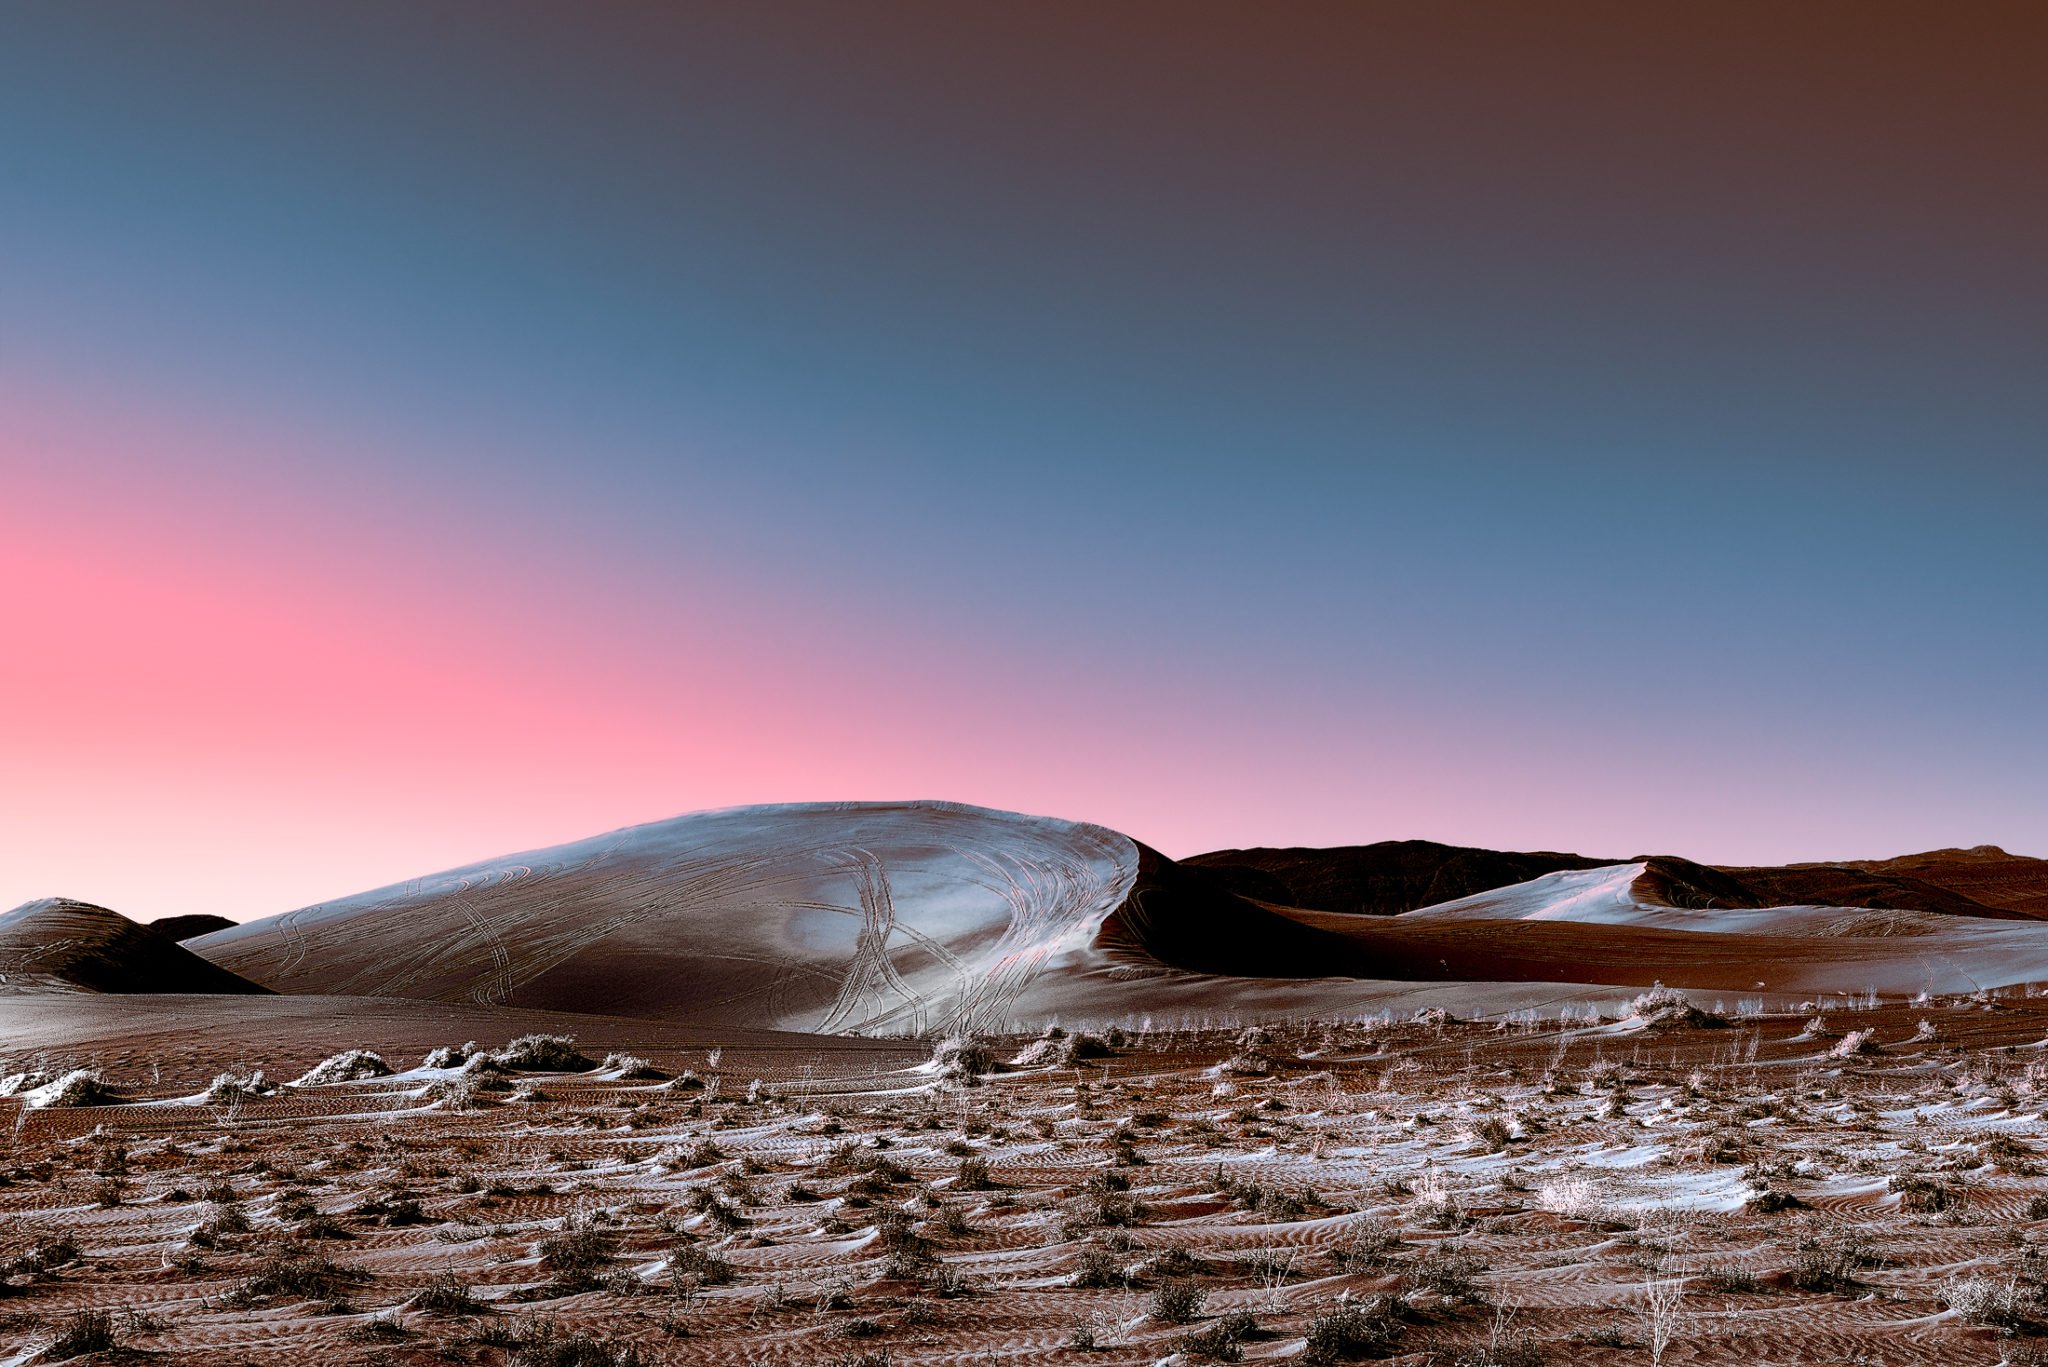 Stefano Gardel's Neon Deserts Look Like an Alien Movie